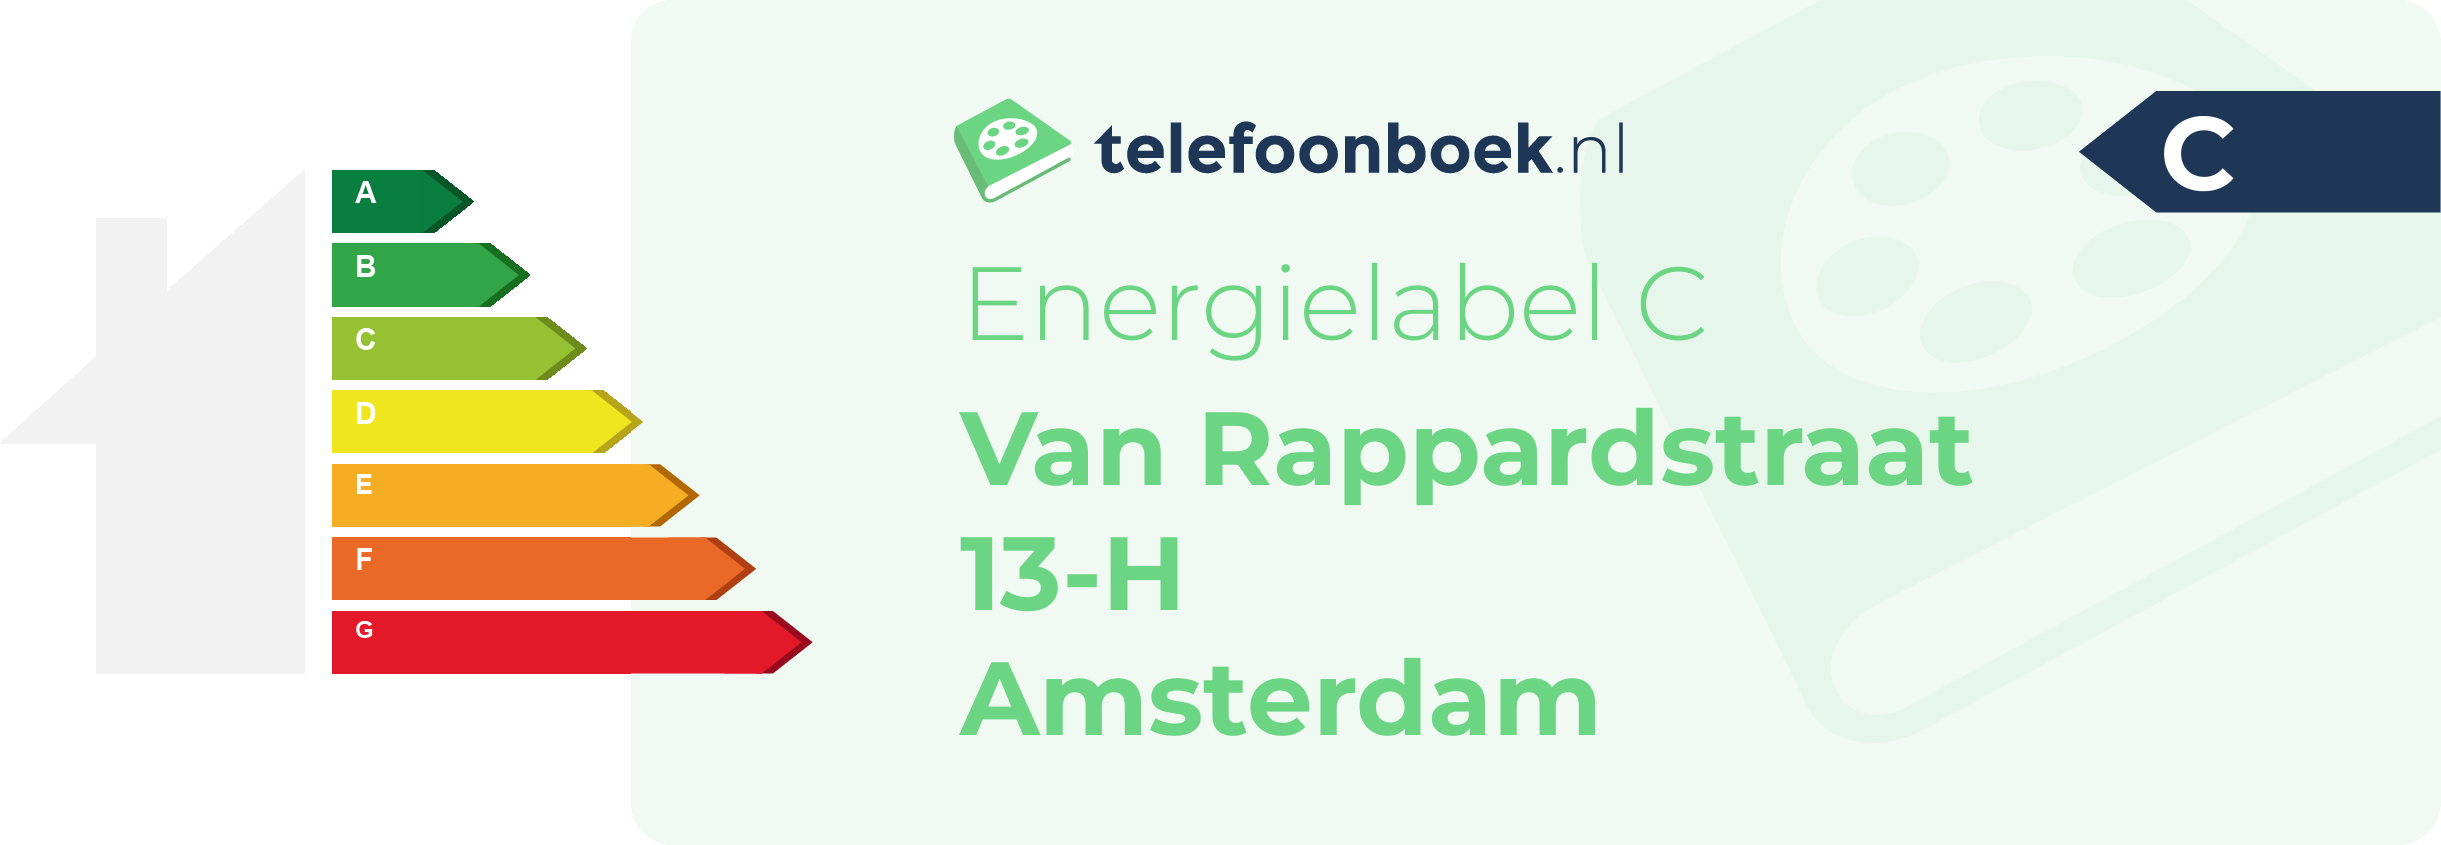 Energielabel Van Rappardstraat 13-H Amsterdam